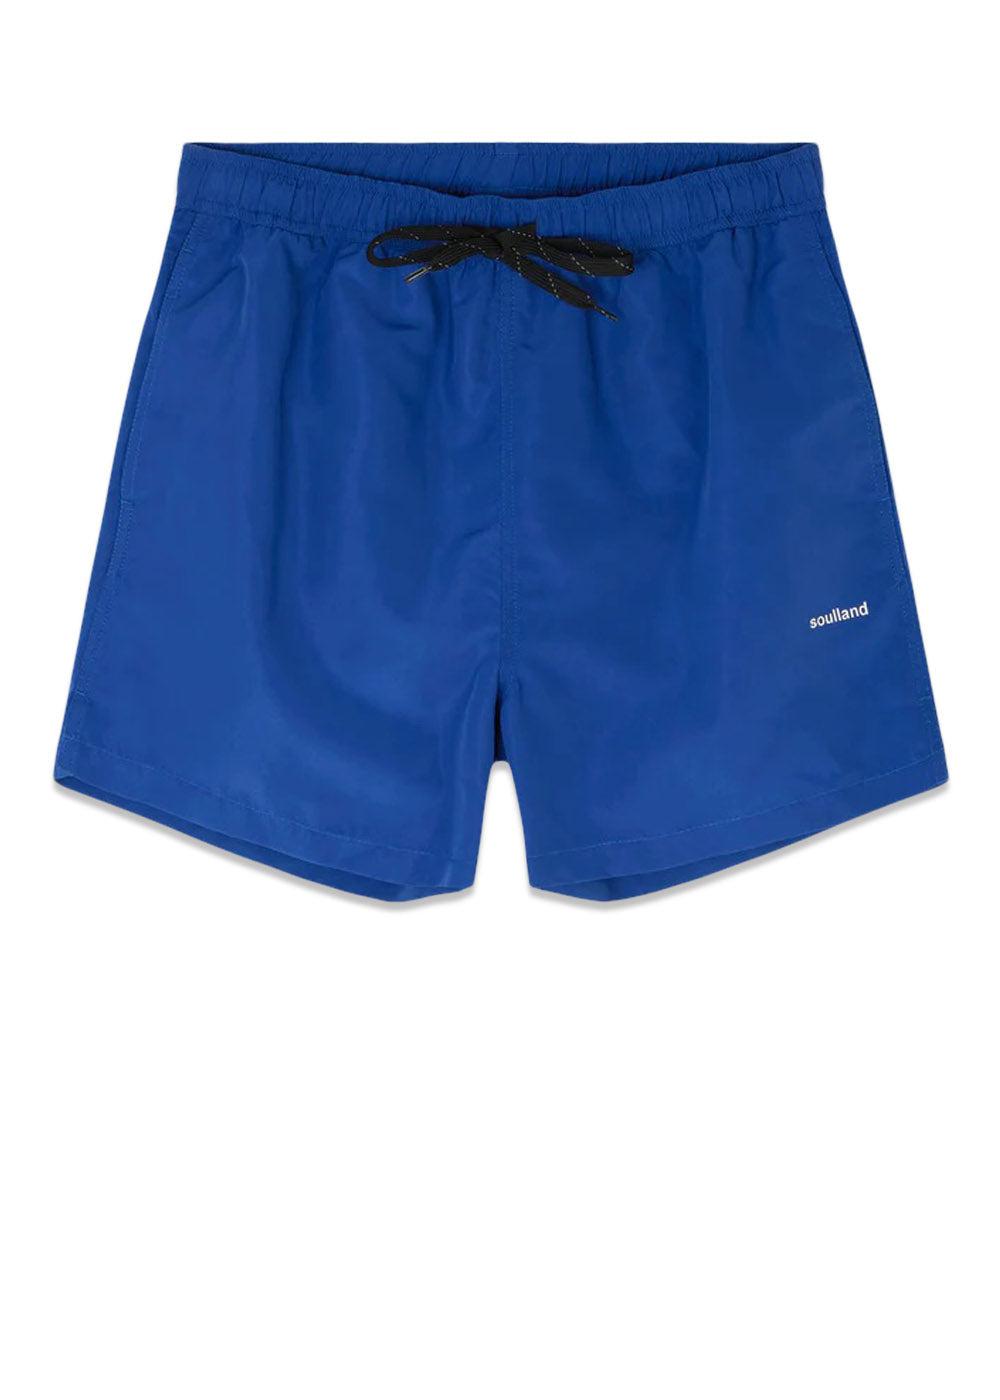 Soullands William swim shorts - Blue. Køb shorts her.